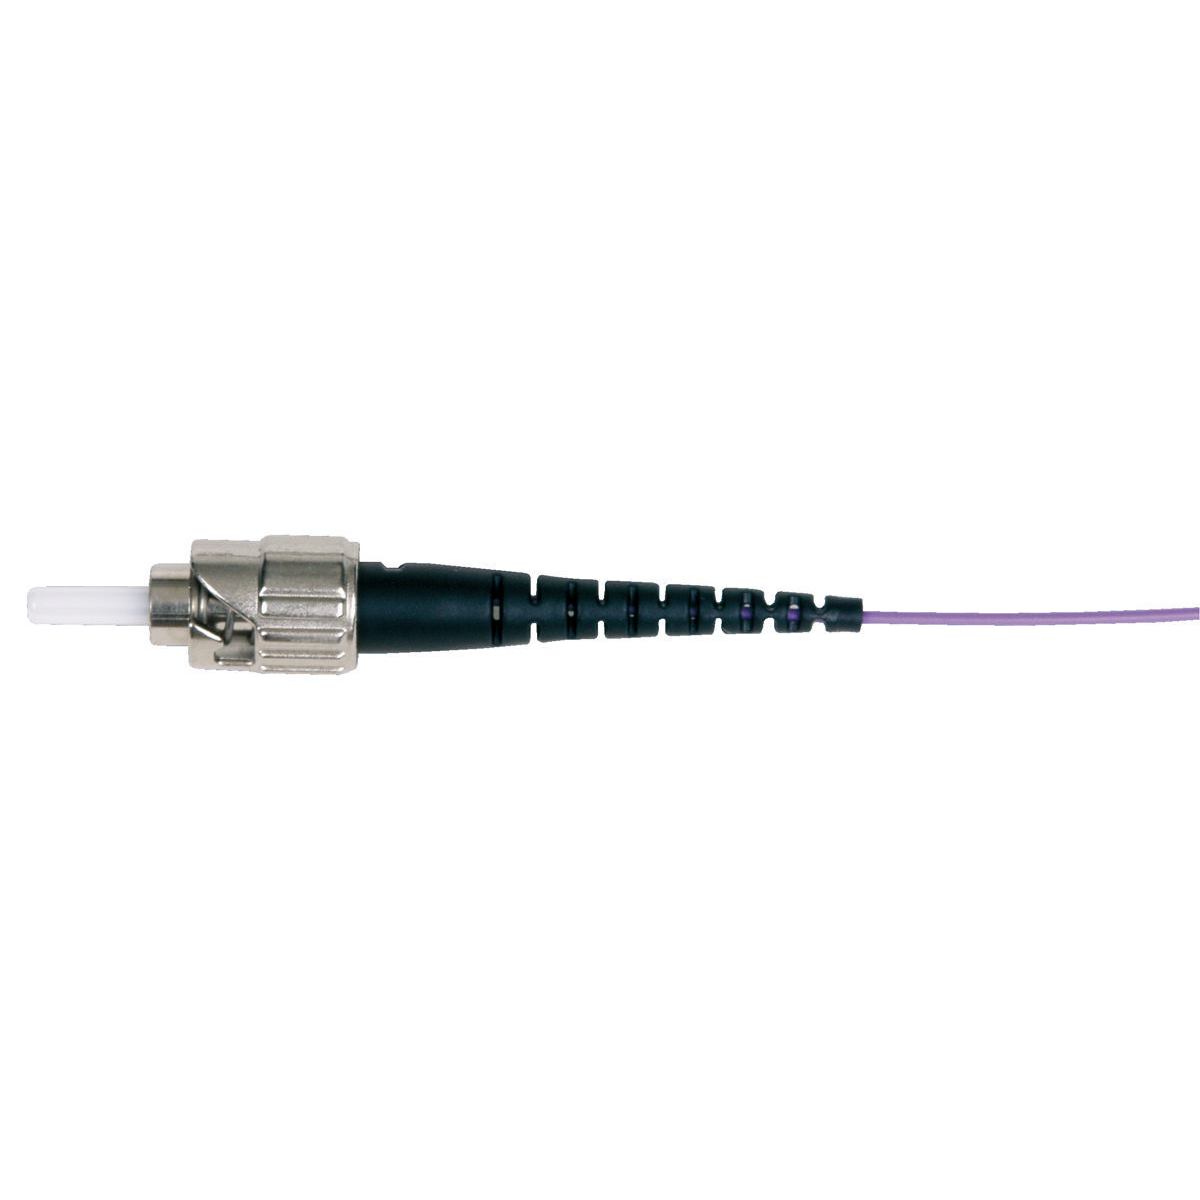 Conector de canal de fibra óptica, estilo St, multimodo, negro, paquete de 12